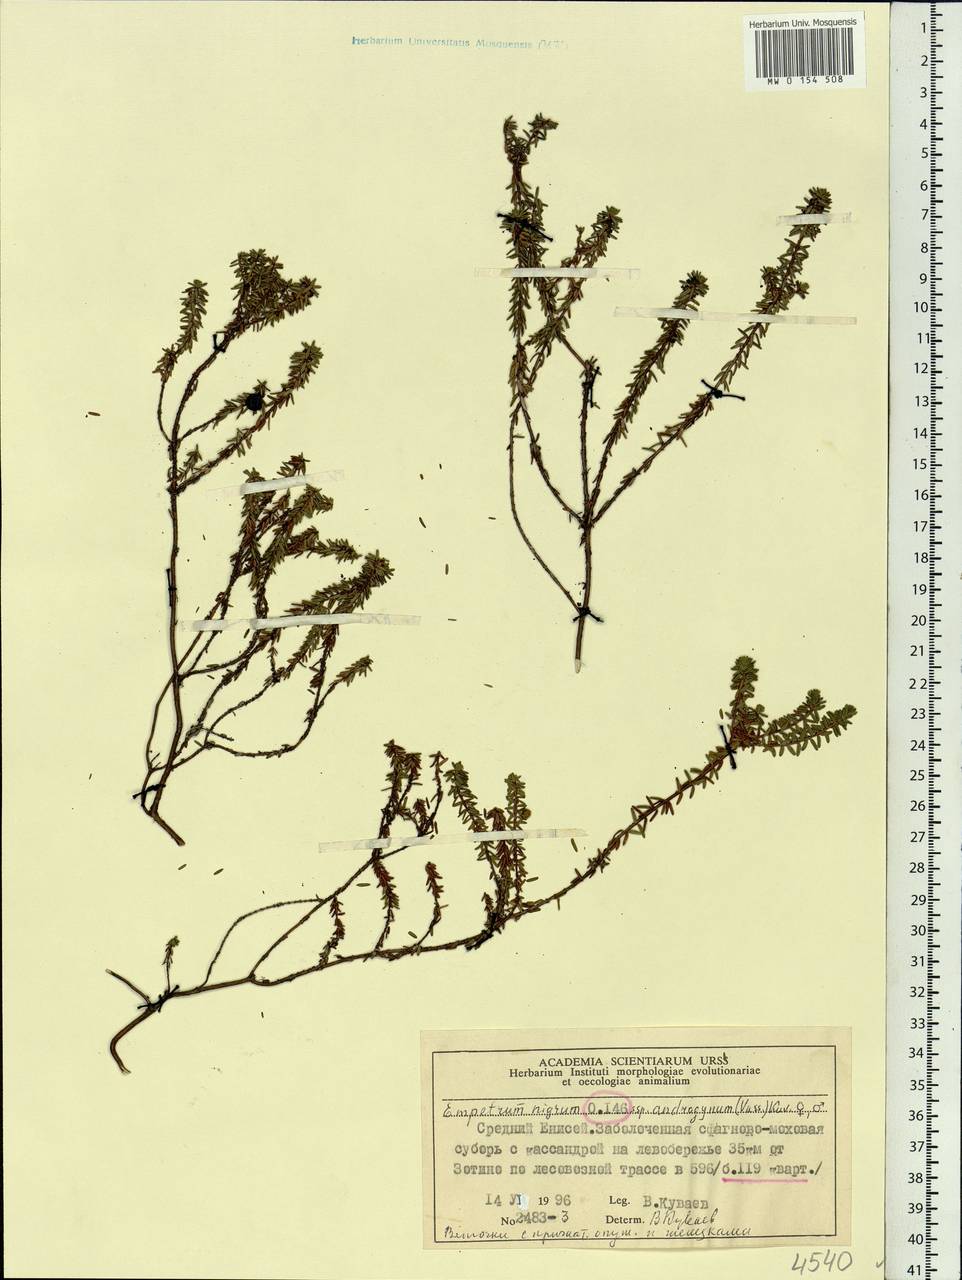 Empetrum nigrum subsp. androgynum (V. N. Vassil.) Kuvaev, Siberia, Central Siberia (S3) (Russia)